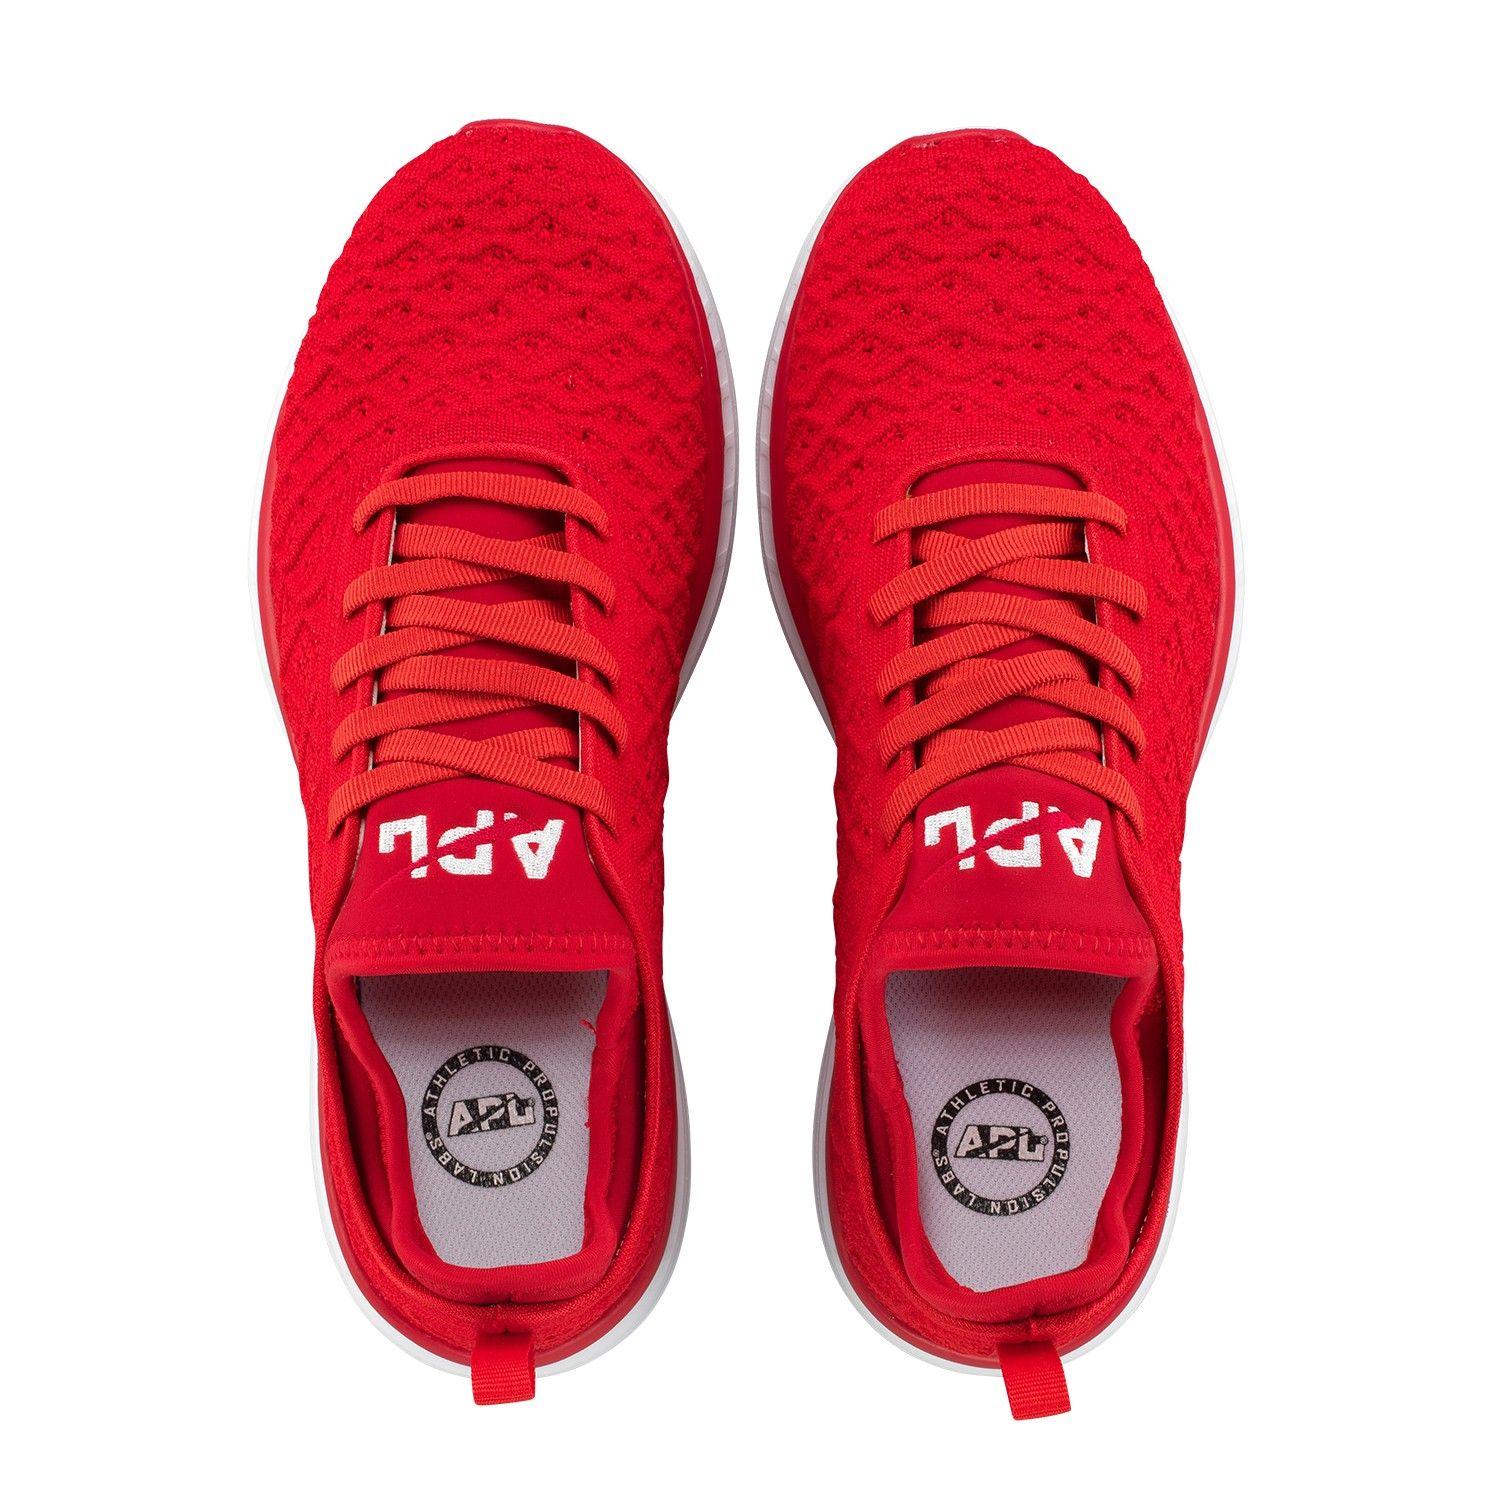 White and Red Shoe Logo - APL Women's Running Shoes TechLoom Phantom Red White